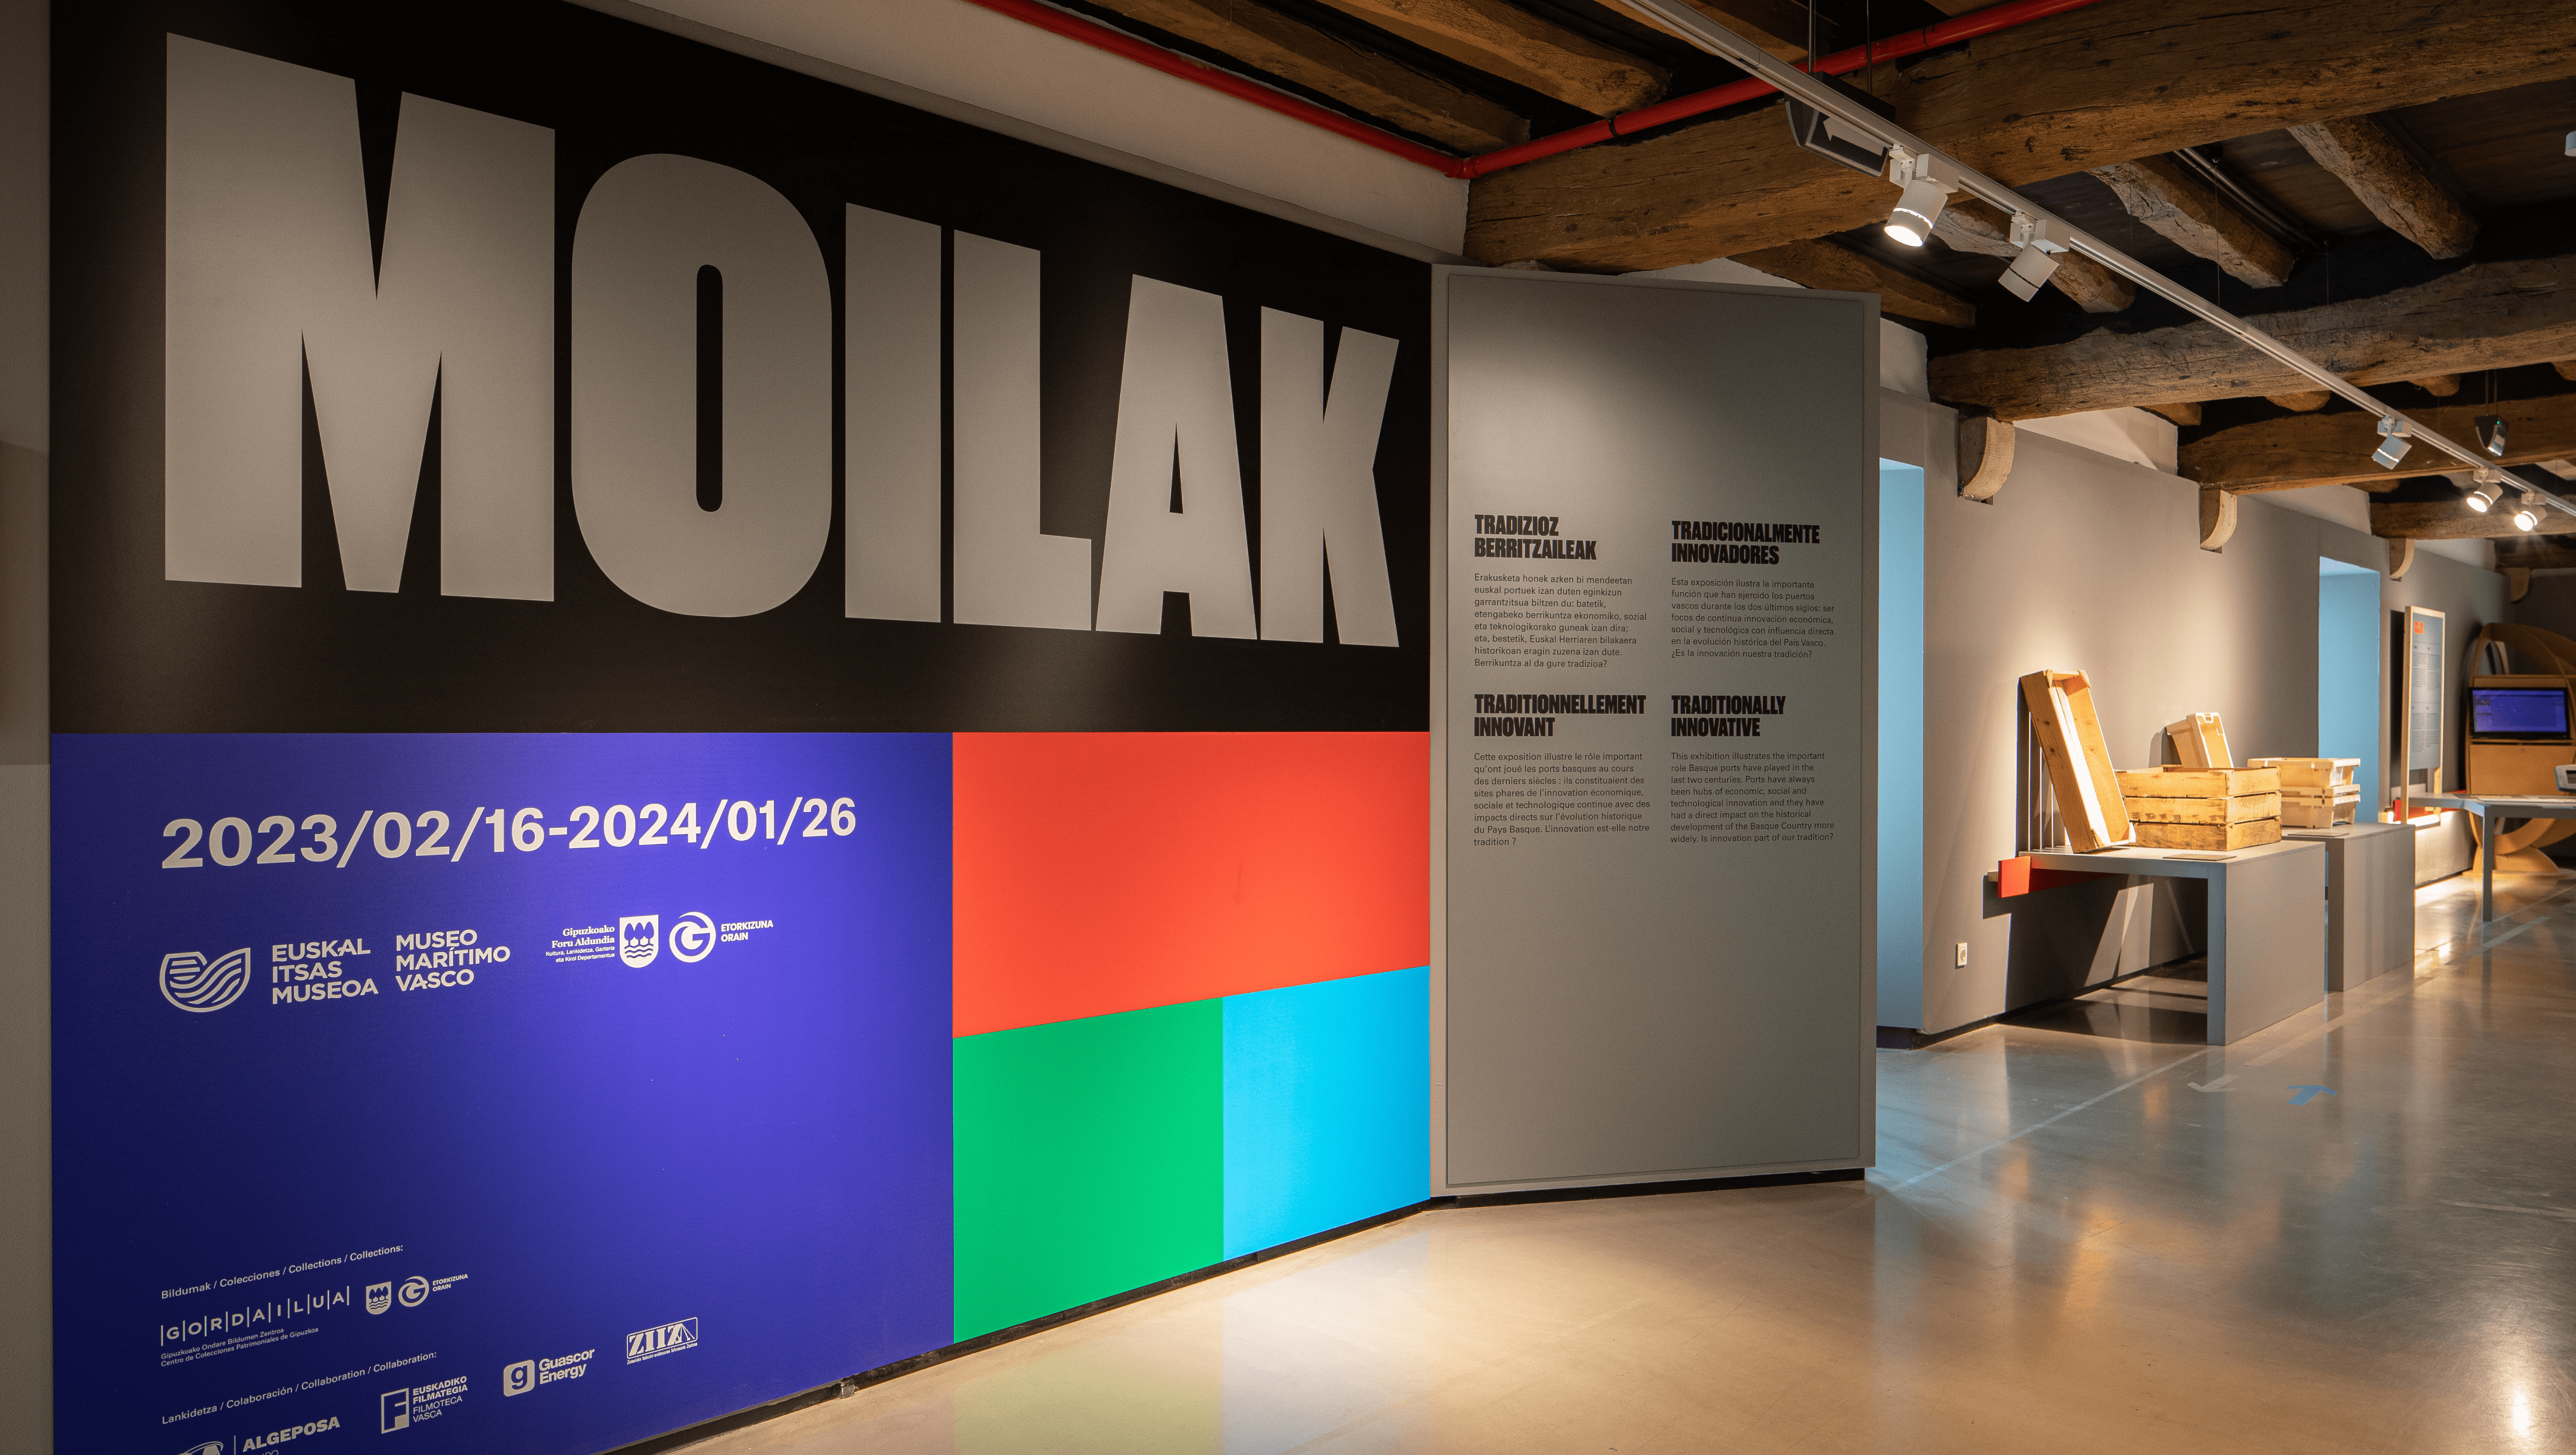 Fotografía de la primera imagen que da la bienvenida a la exposición Moillak, el cartel de la muestra